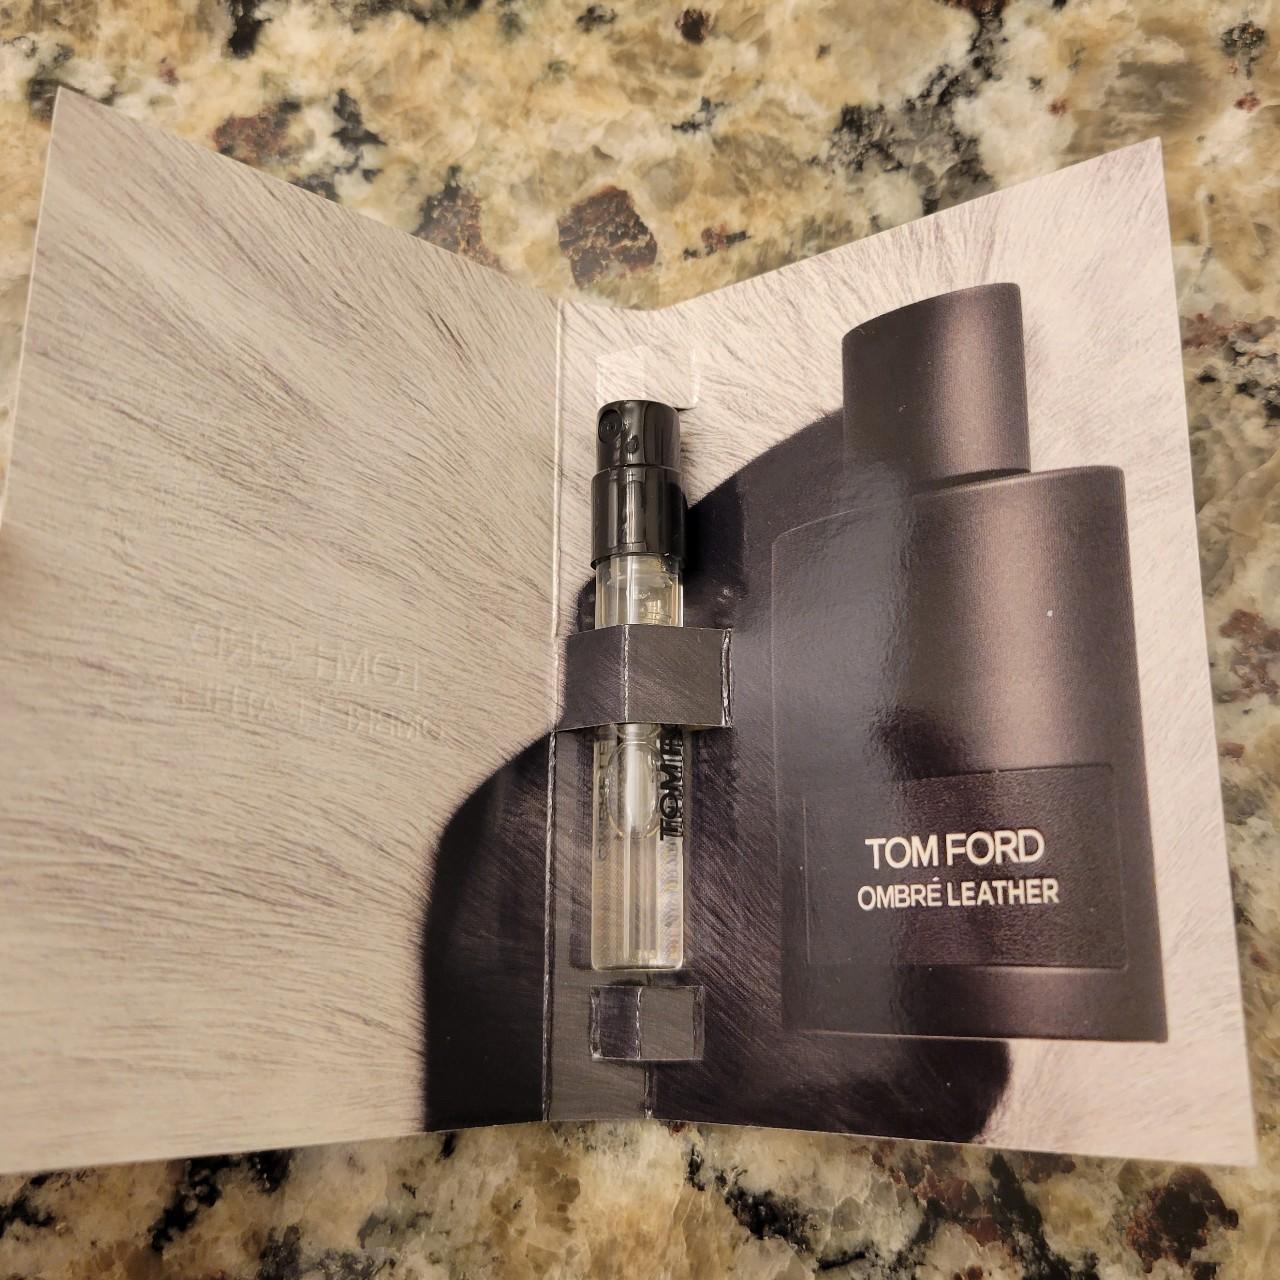 TOM FORD Fragrance | Depop